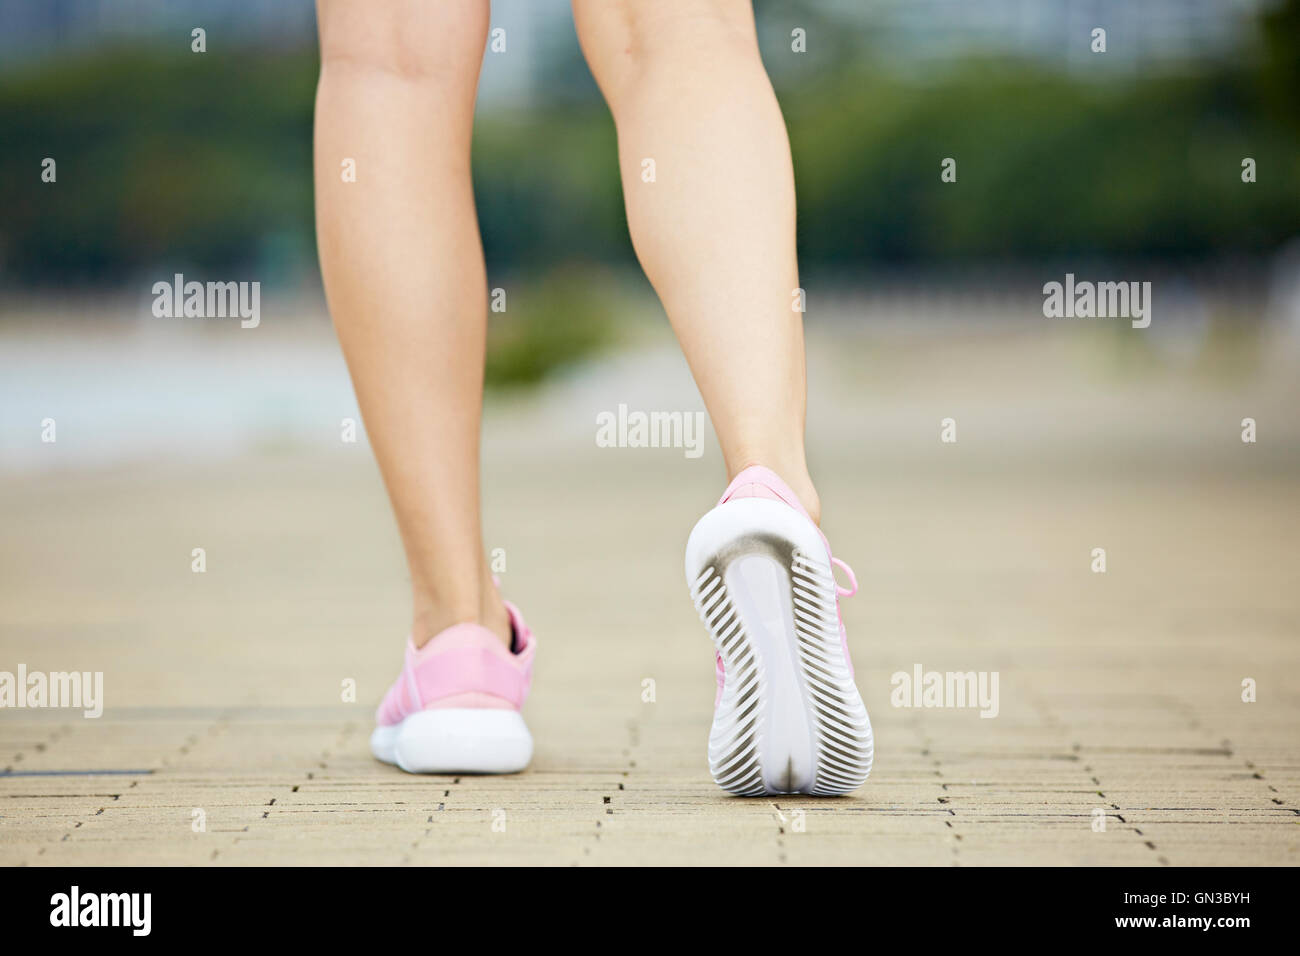 Pieds et Jambes inférieures d'un female jogger, prêt à être exécuté. Banque D'Images